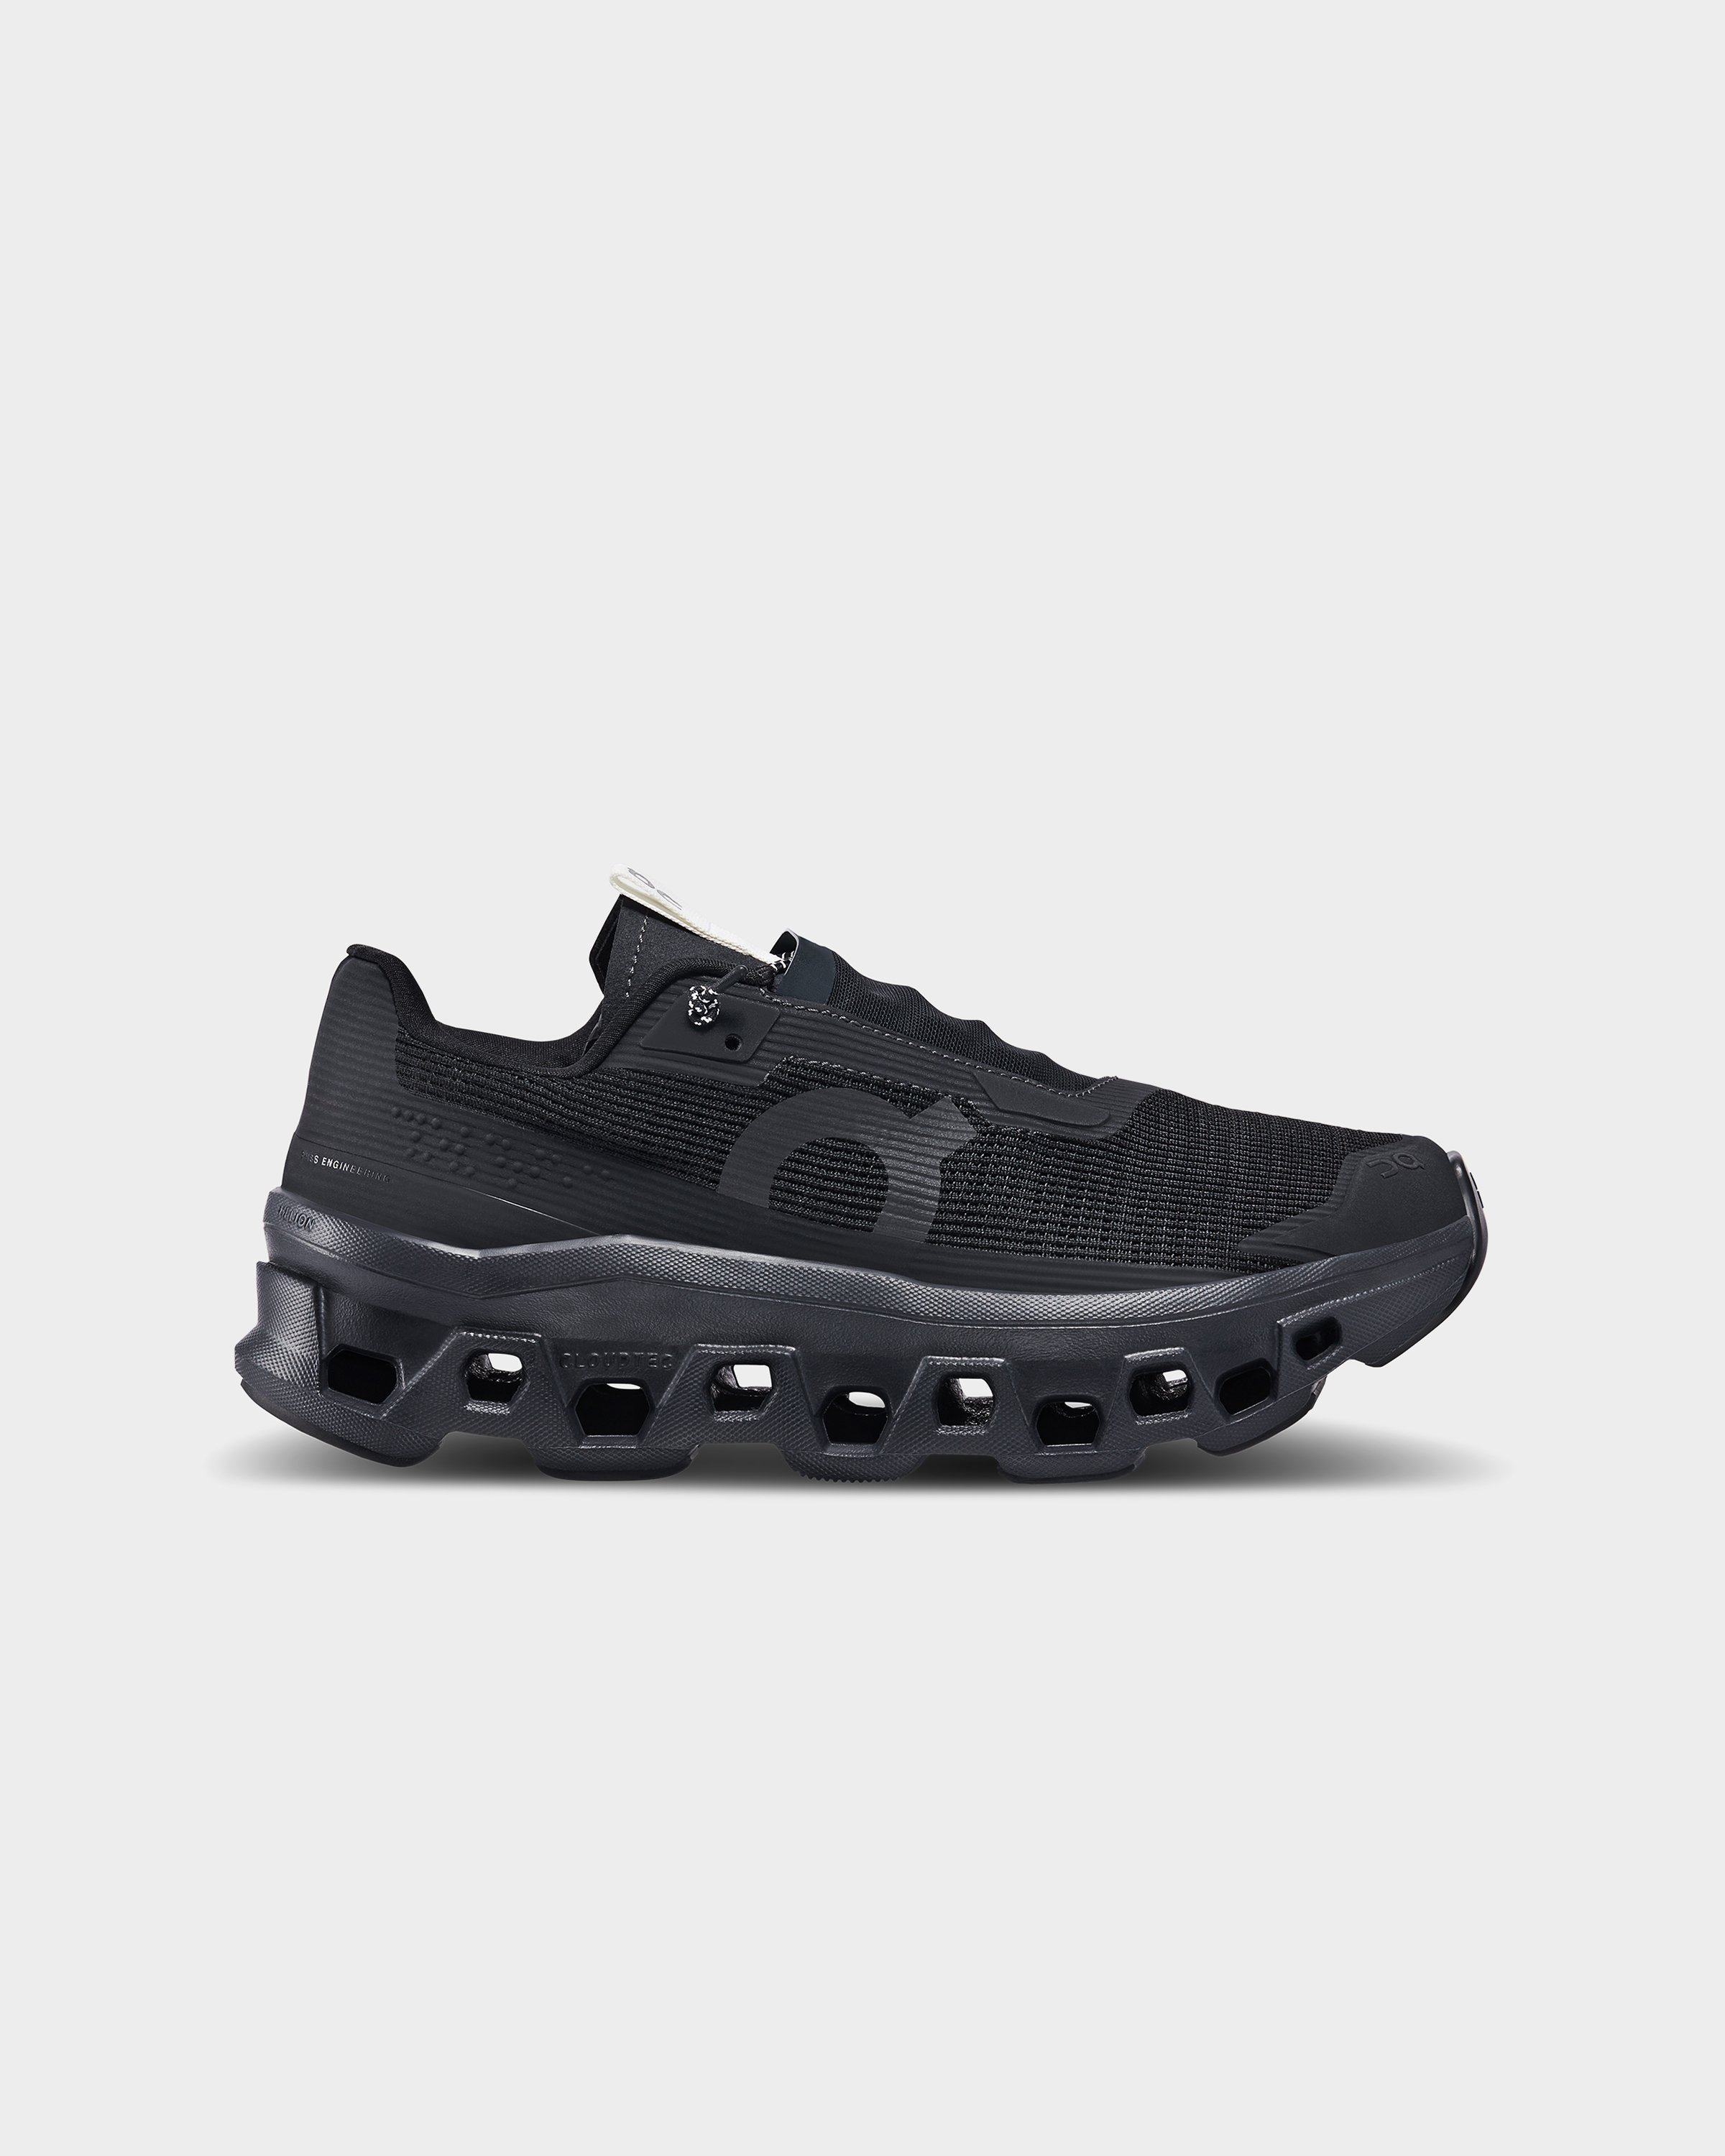 On - Cloudmonster Sensa Black - Footwear - Black - Image 1